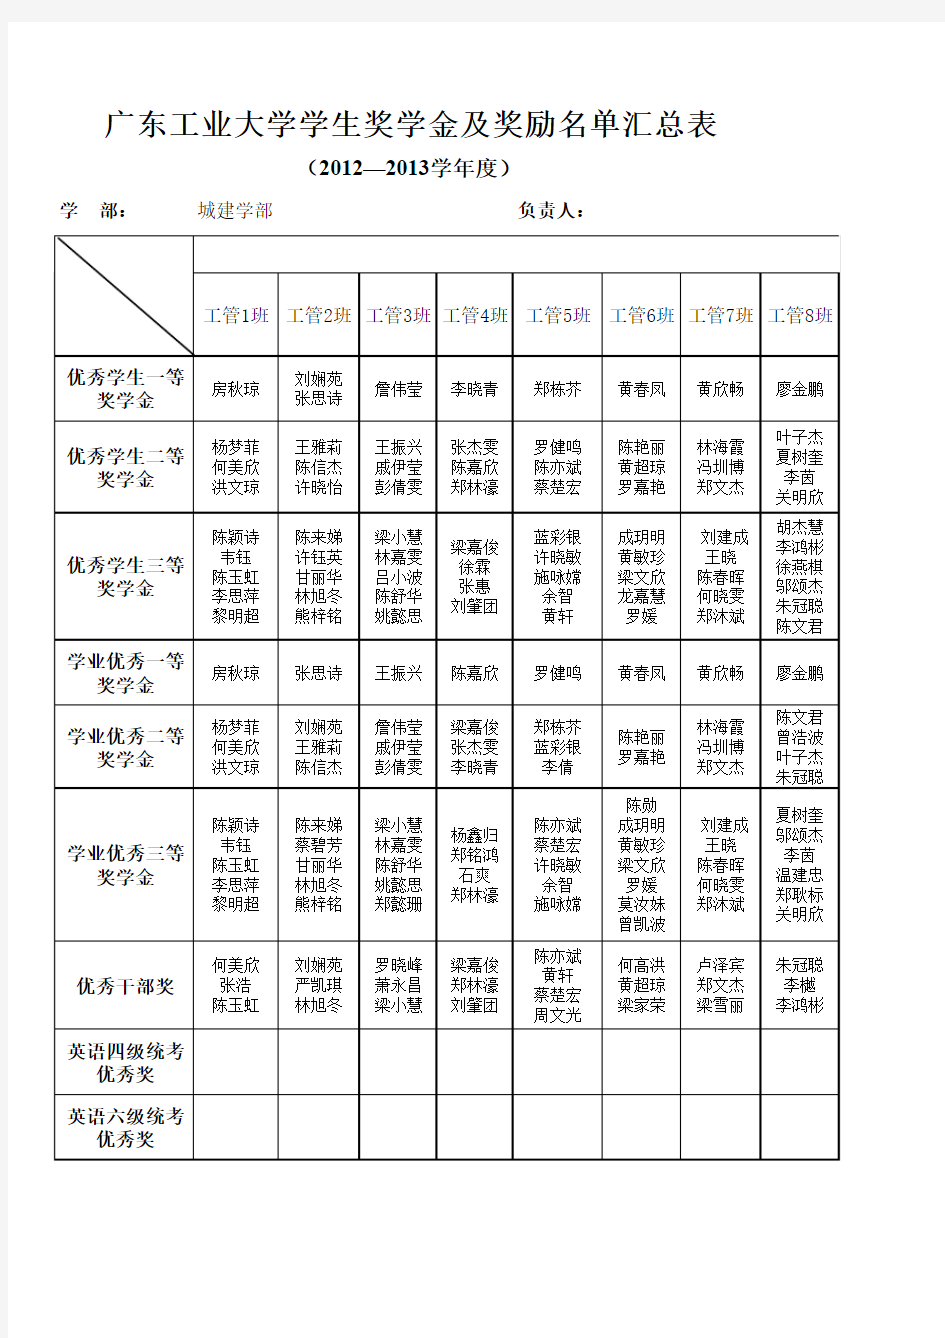 广东工业大学学生奖学金及奖励名单汇总表